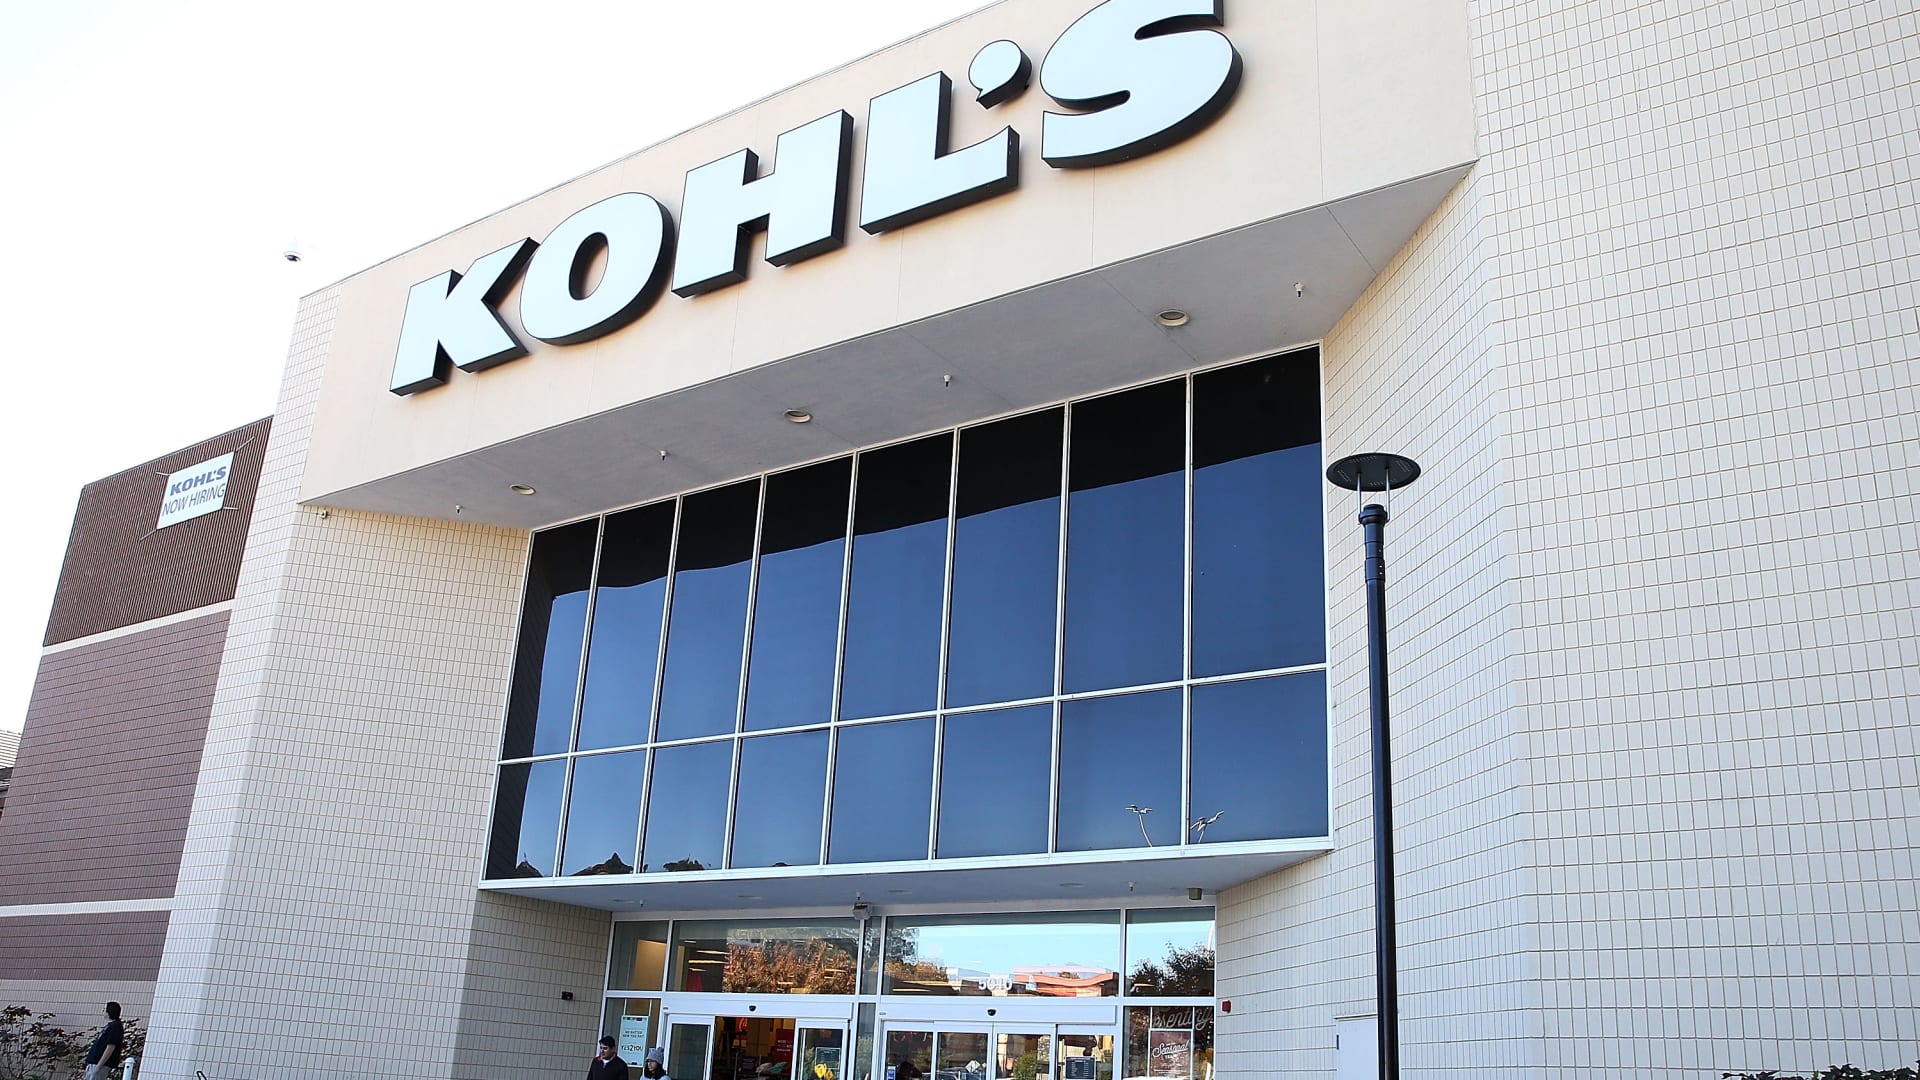 Kohl's (KSS) earnings Q12023